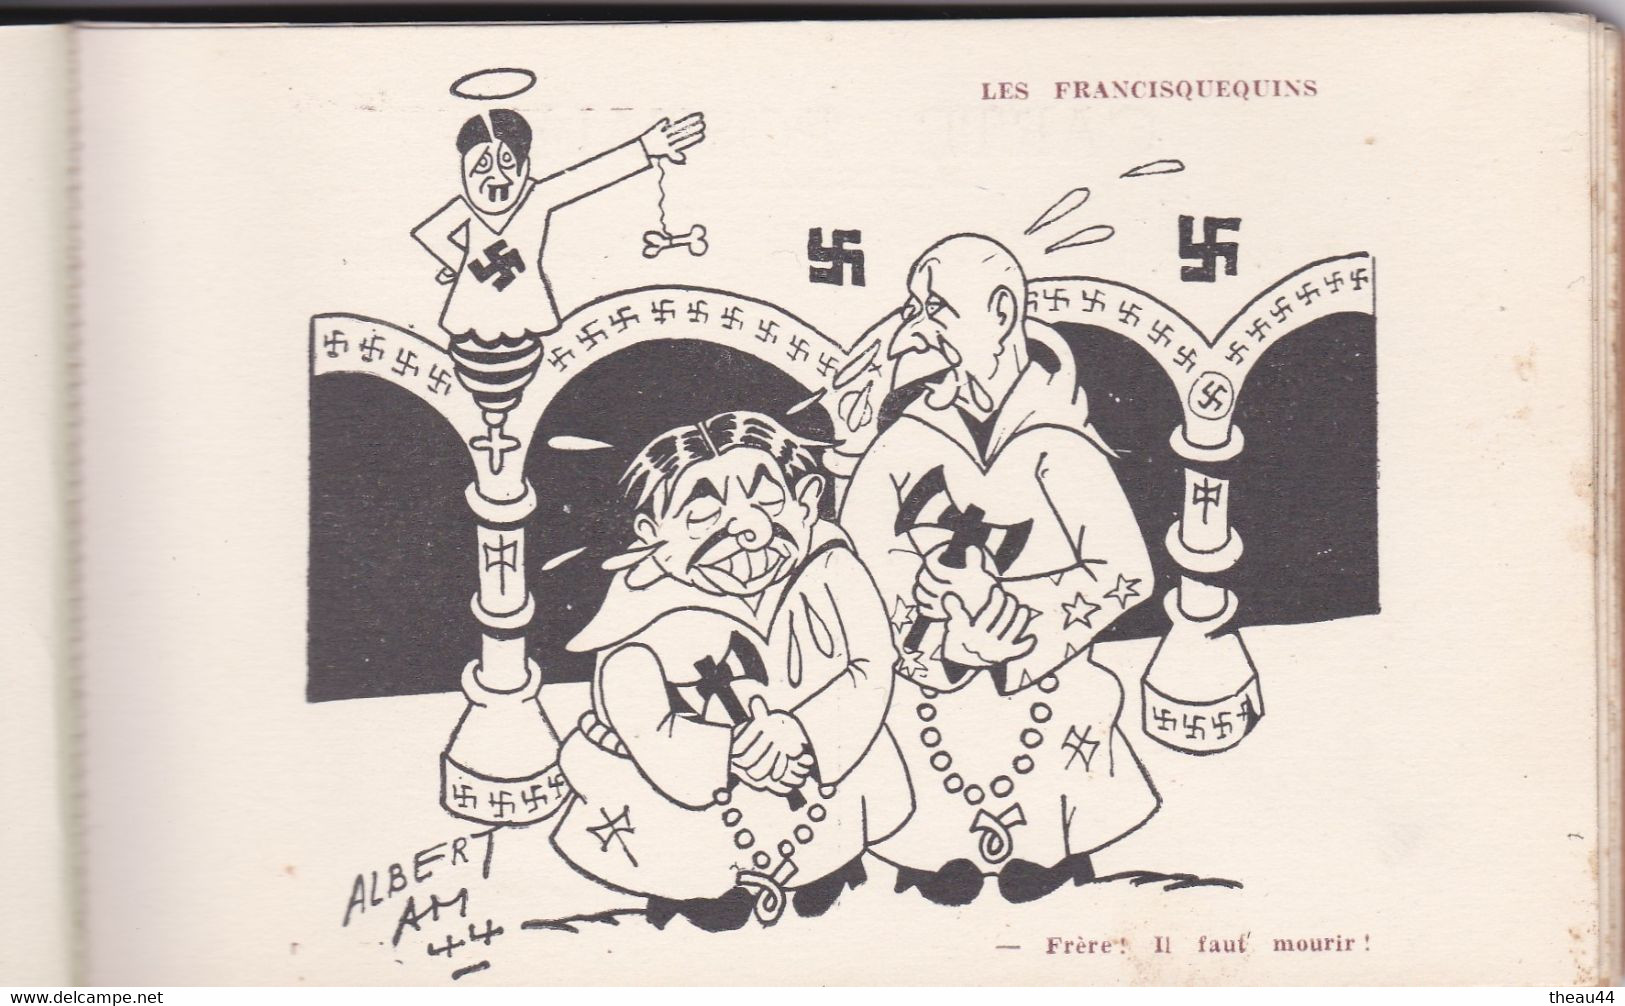 Carnet de 10 Cartes de l'Illustrateur "Albert AM" -Caricature de "Hitler" - Sur ses Pas - 2e Guerre Mondiale - Politique